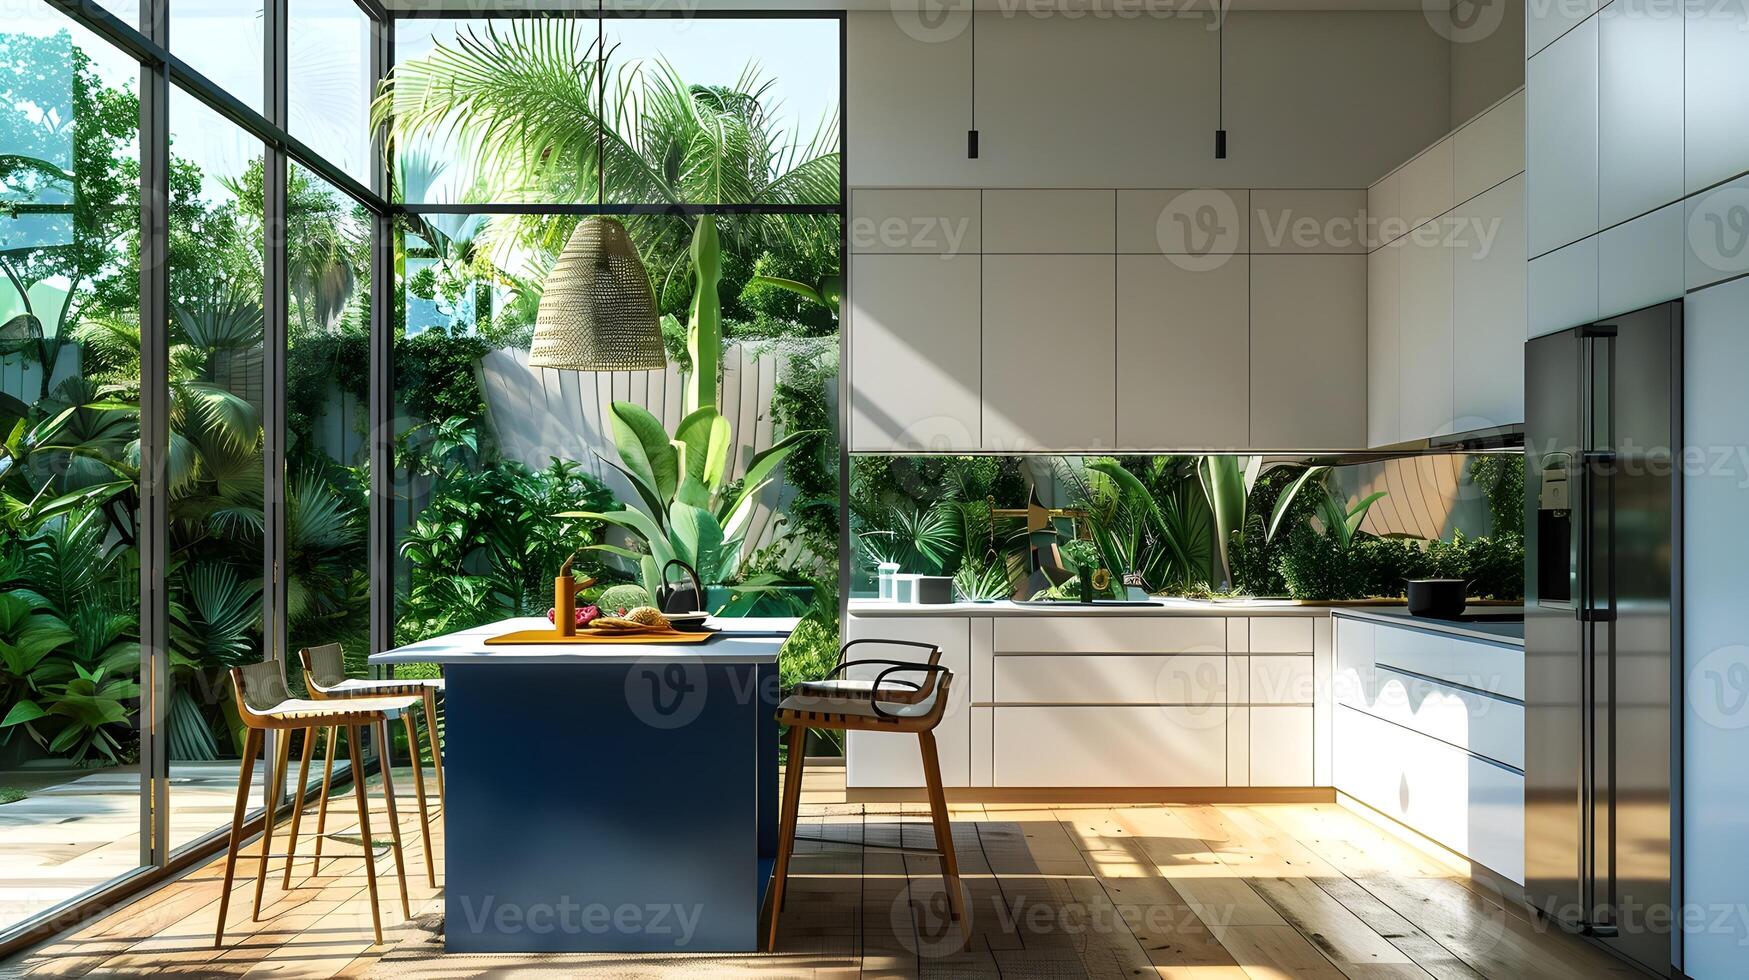 op het randje wit keuken met blauw eiland en tropisch tuin visie in minimalistisch ontwerp foto